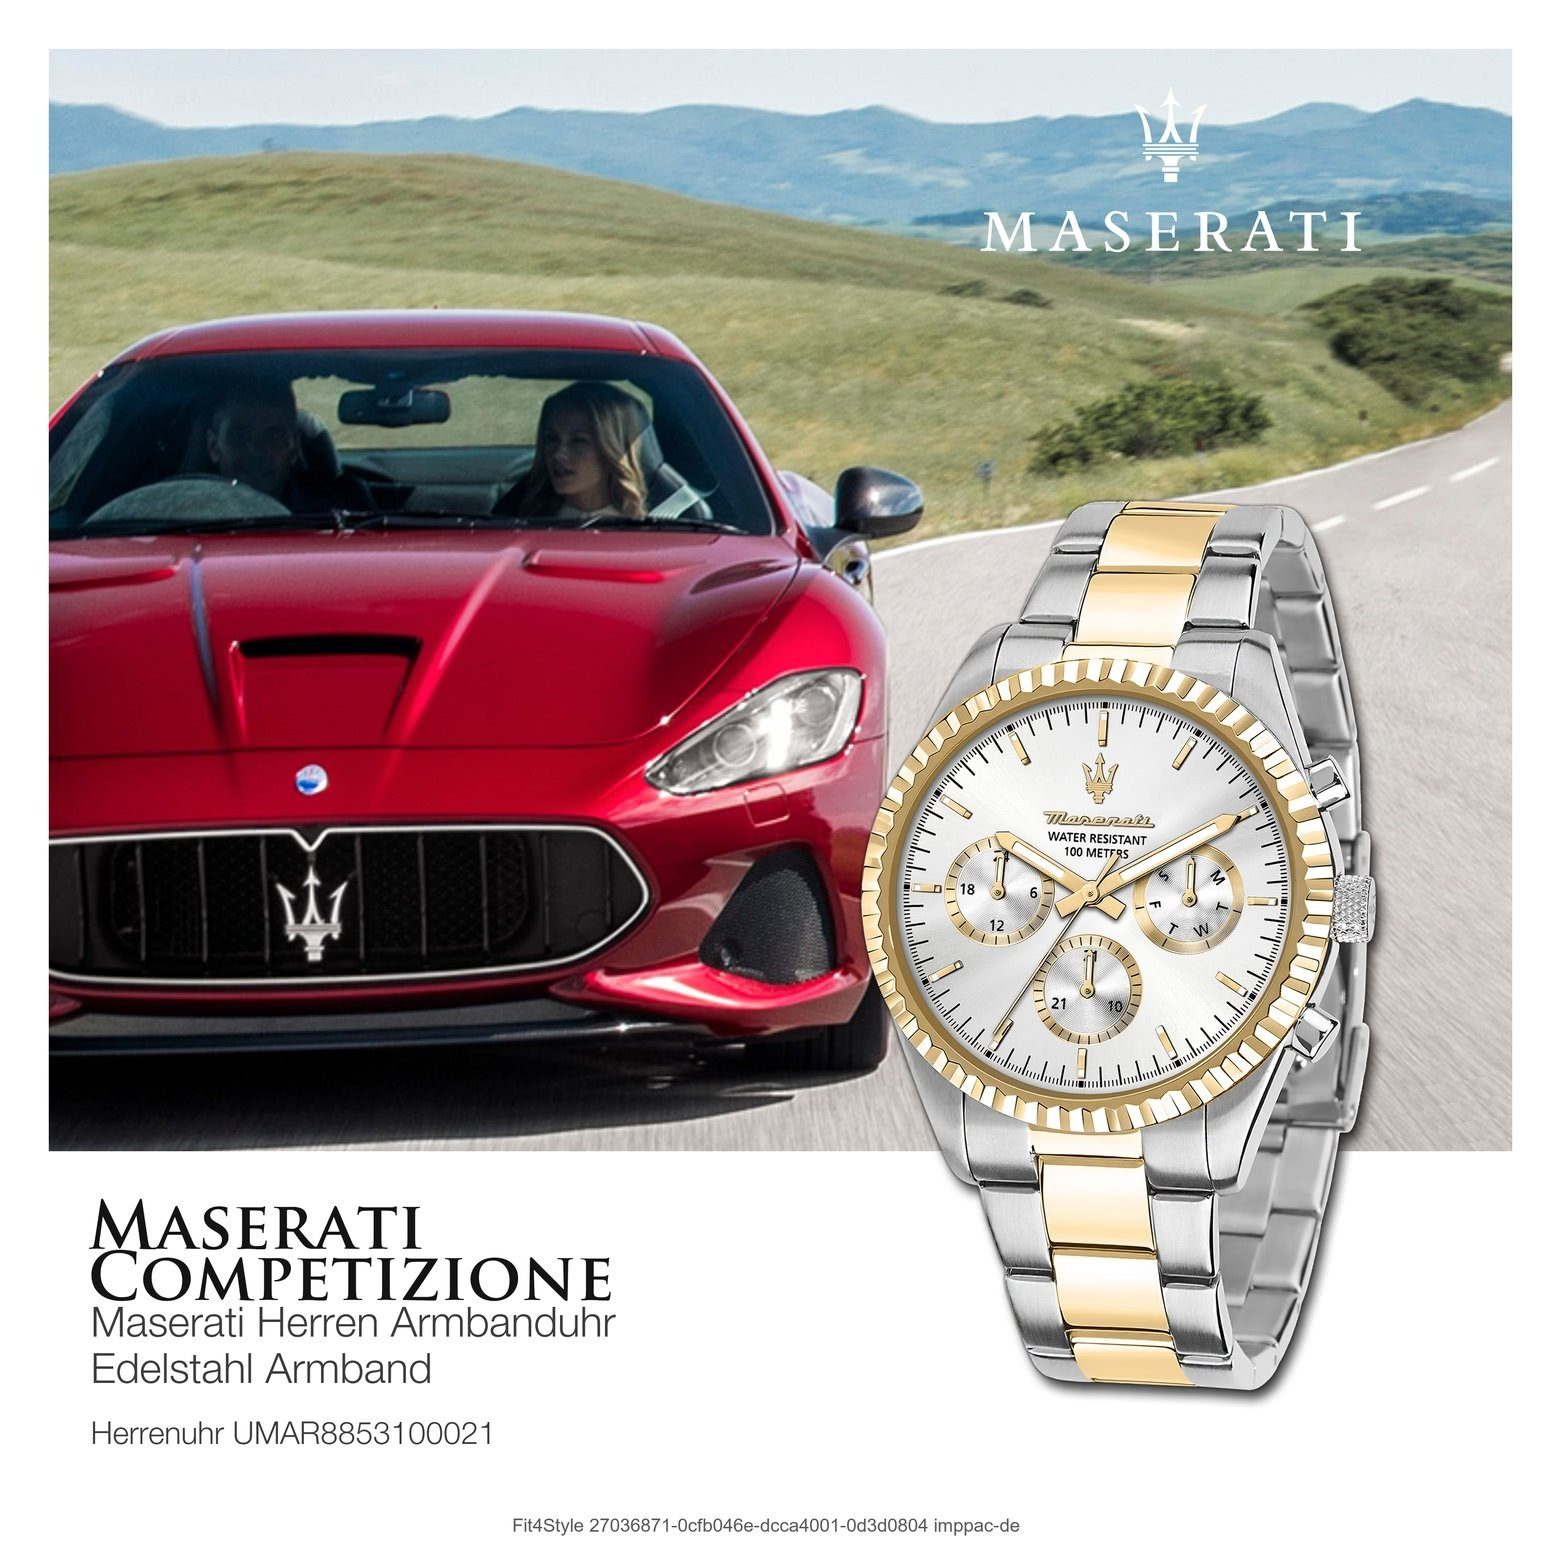 MASERATI Multifunktionsuhr COMPETIZIONE, Herrenuhr Herrenuhr 51,5x43mm) Made-In gold, rund, weiß Maserati Italy (ca. groß Edelstahlarmband